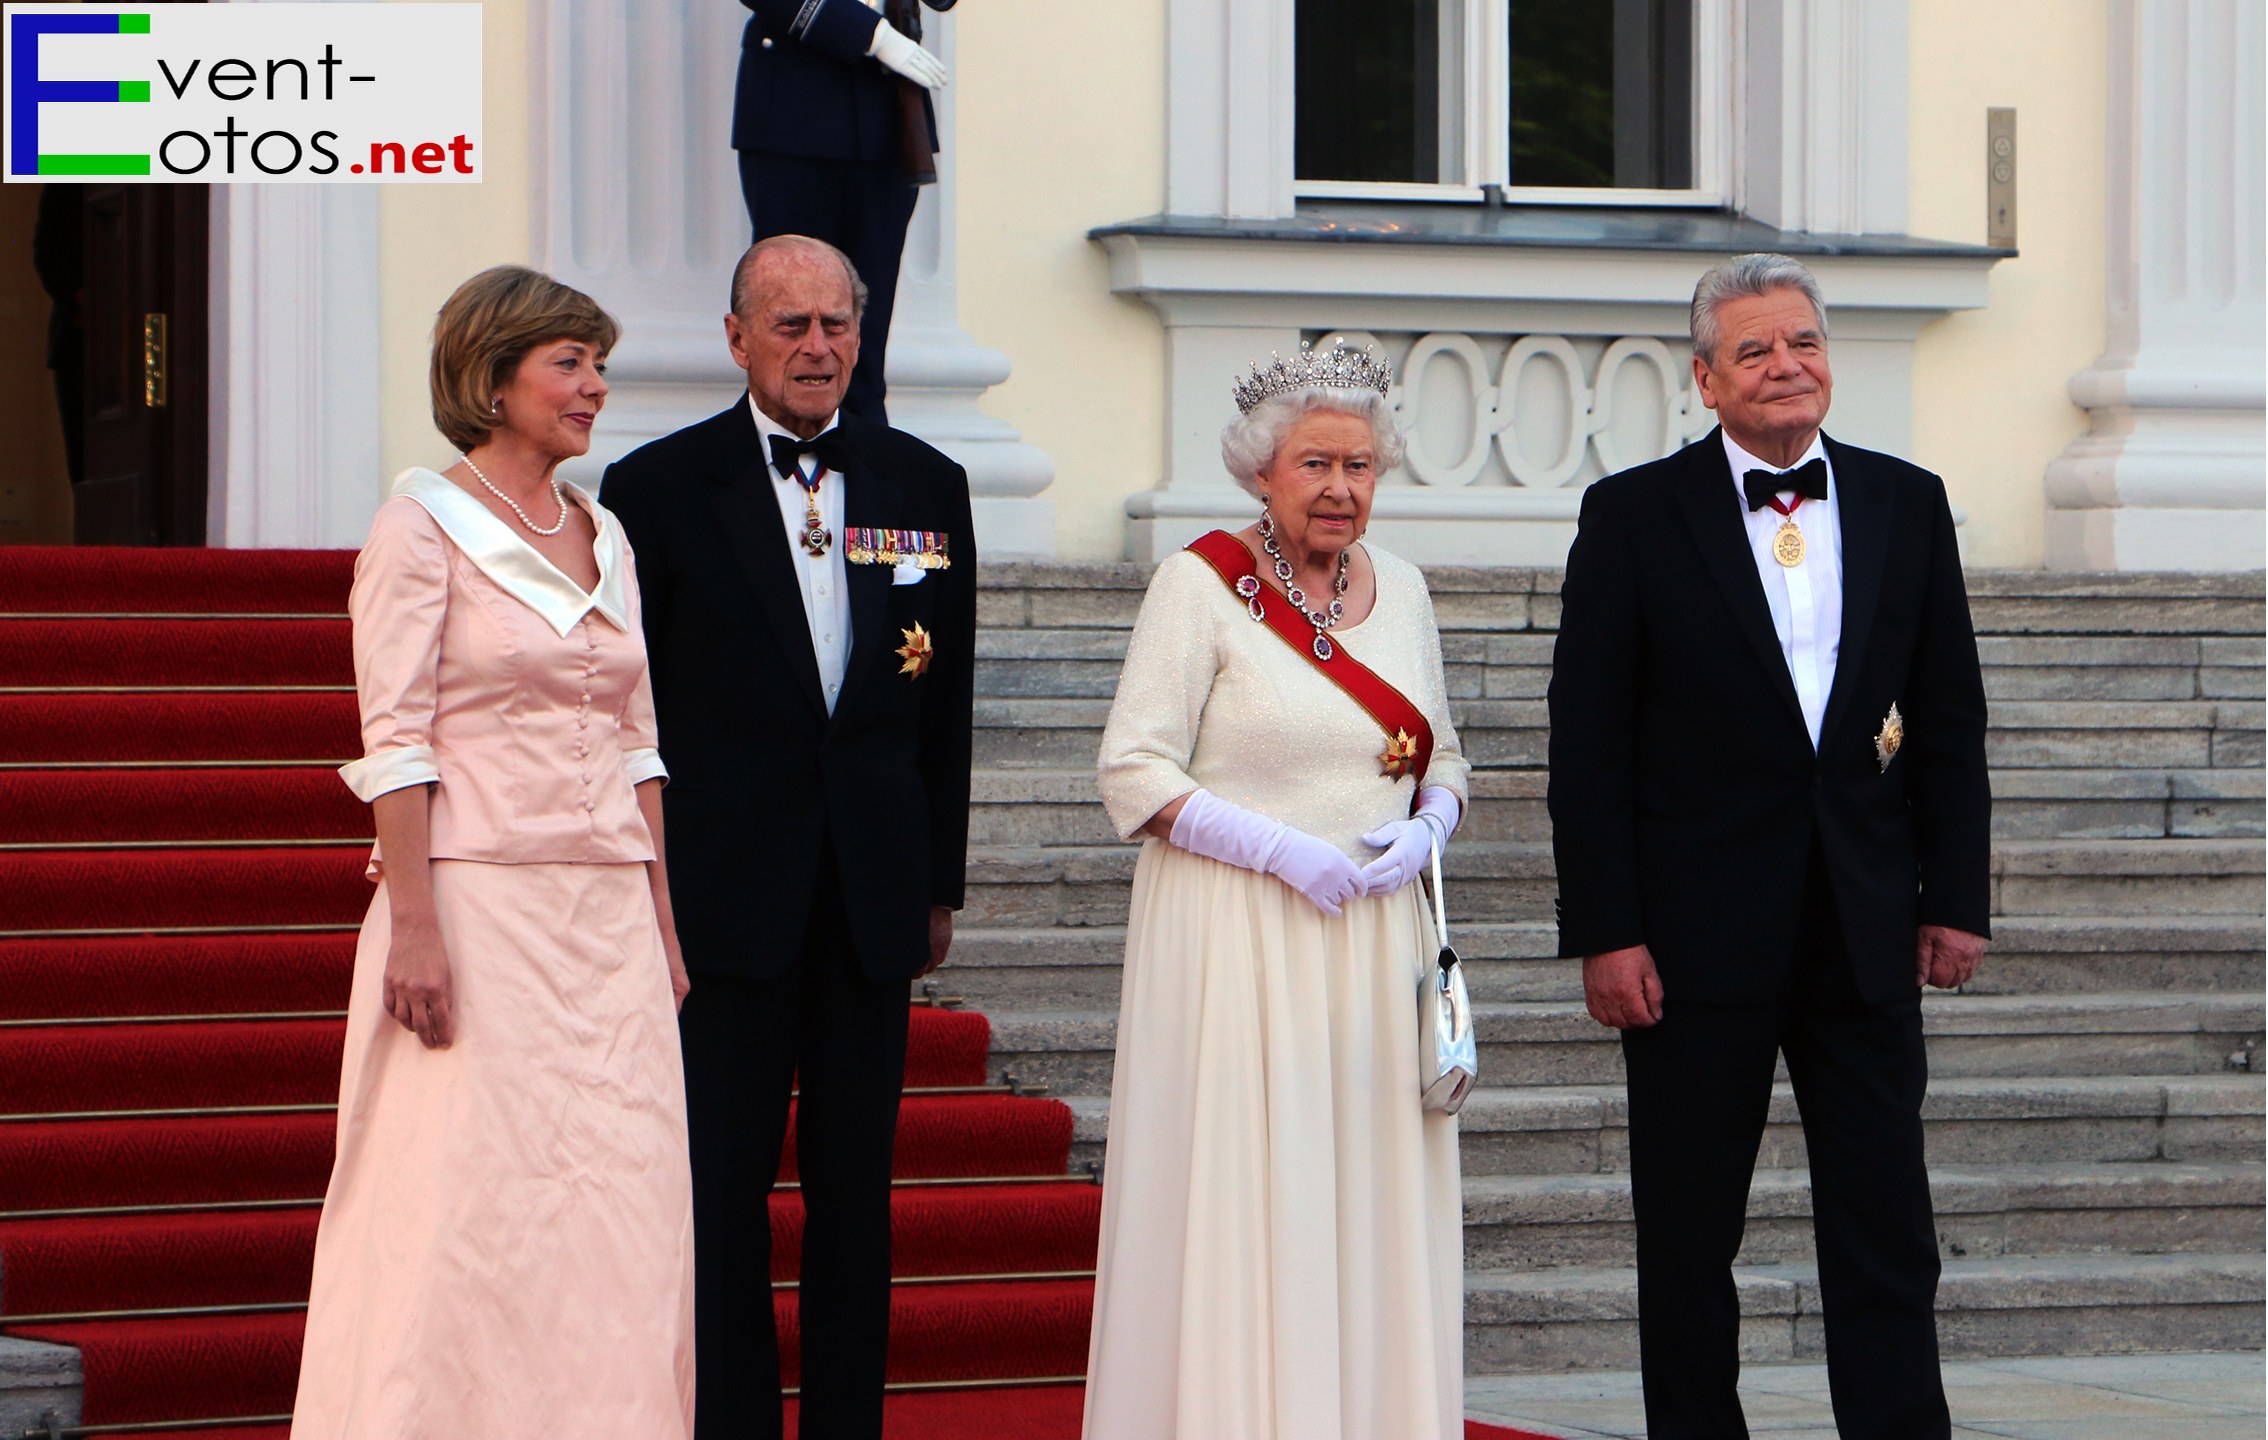 D.Schadt, Prinz Philip, die Queen (mit Diadem) und J.Gauck
